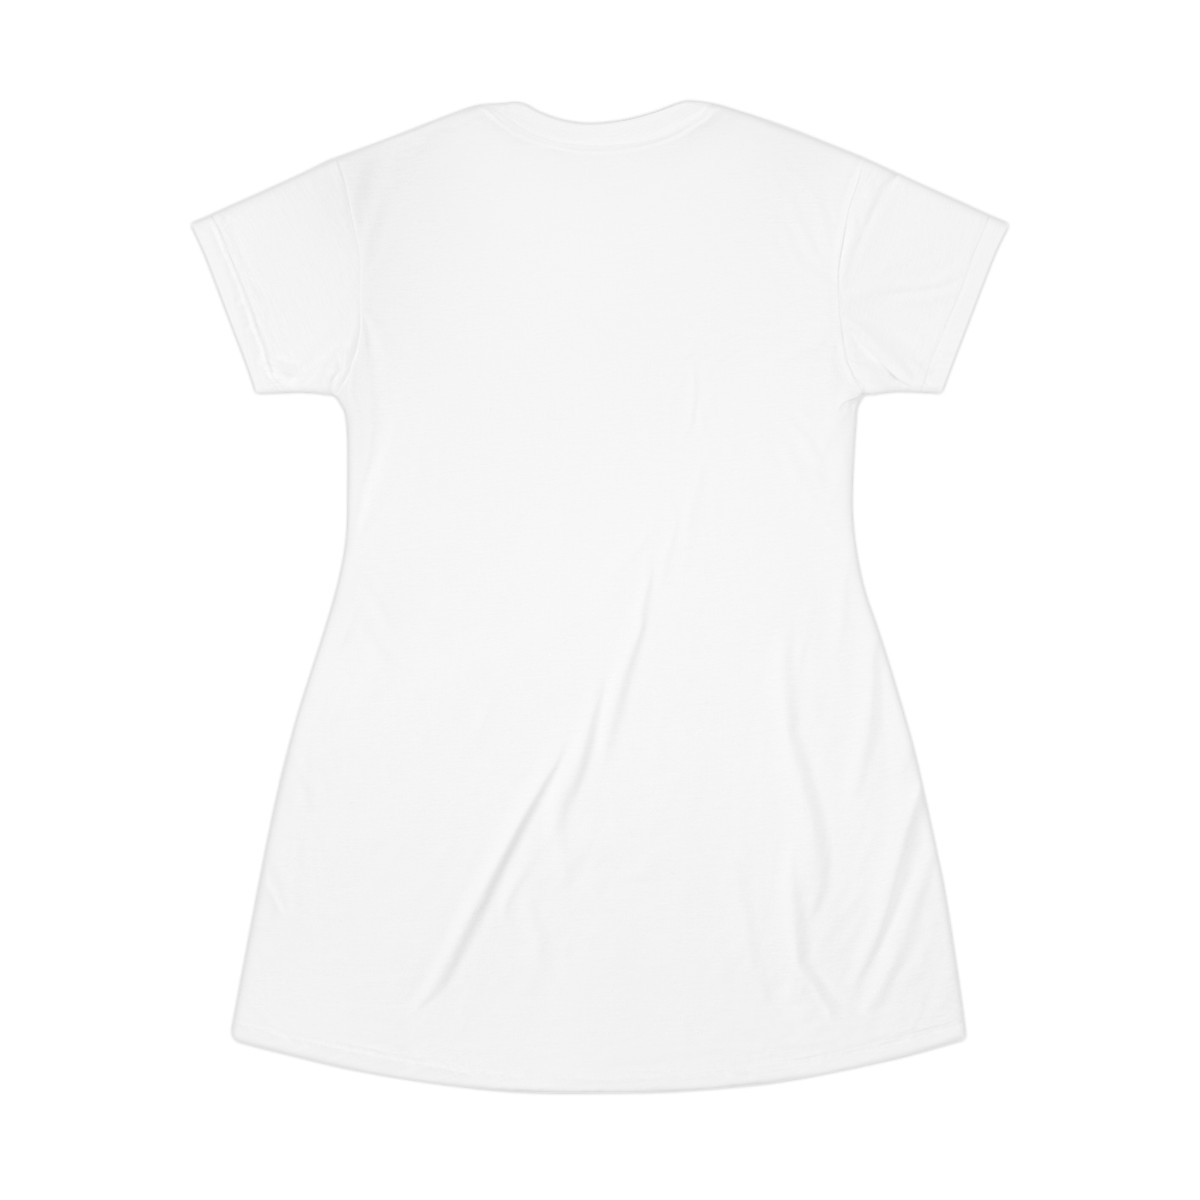 VEGAN: T-Shirt Dress (AOP) product thumbnail image